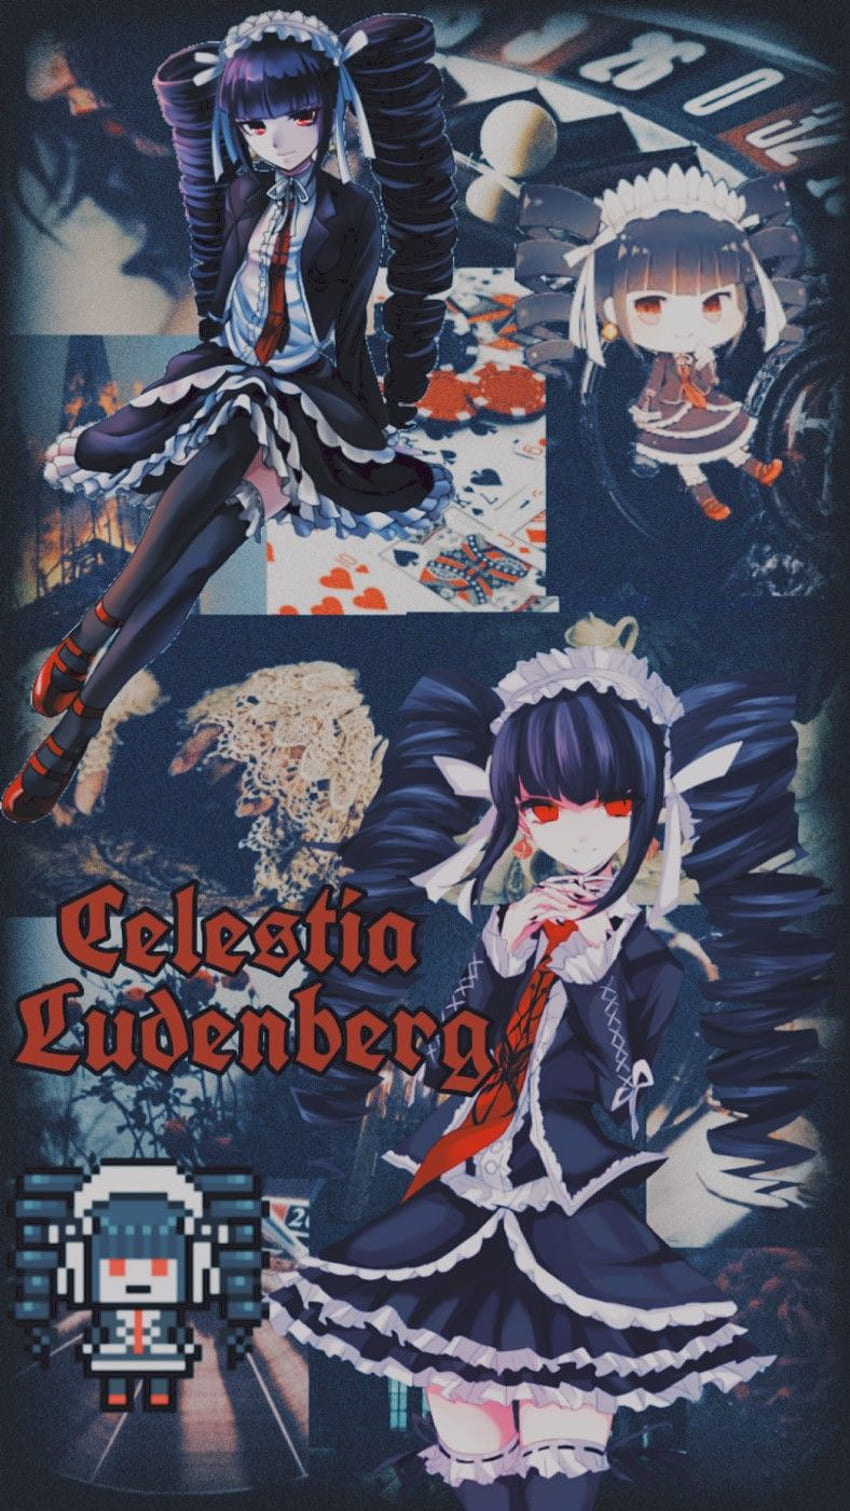 Celestia Ludenberg. Danganronpa characters, Cute anime , Danganronpa aesthetic celestia, Celestia Ludenberg Phone HD phone wallpaper